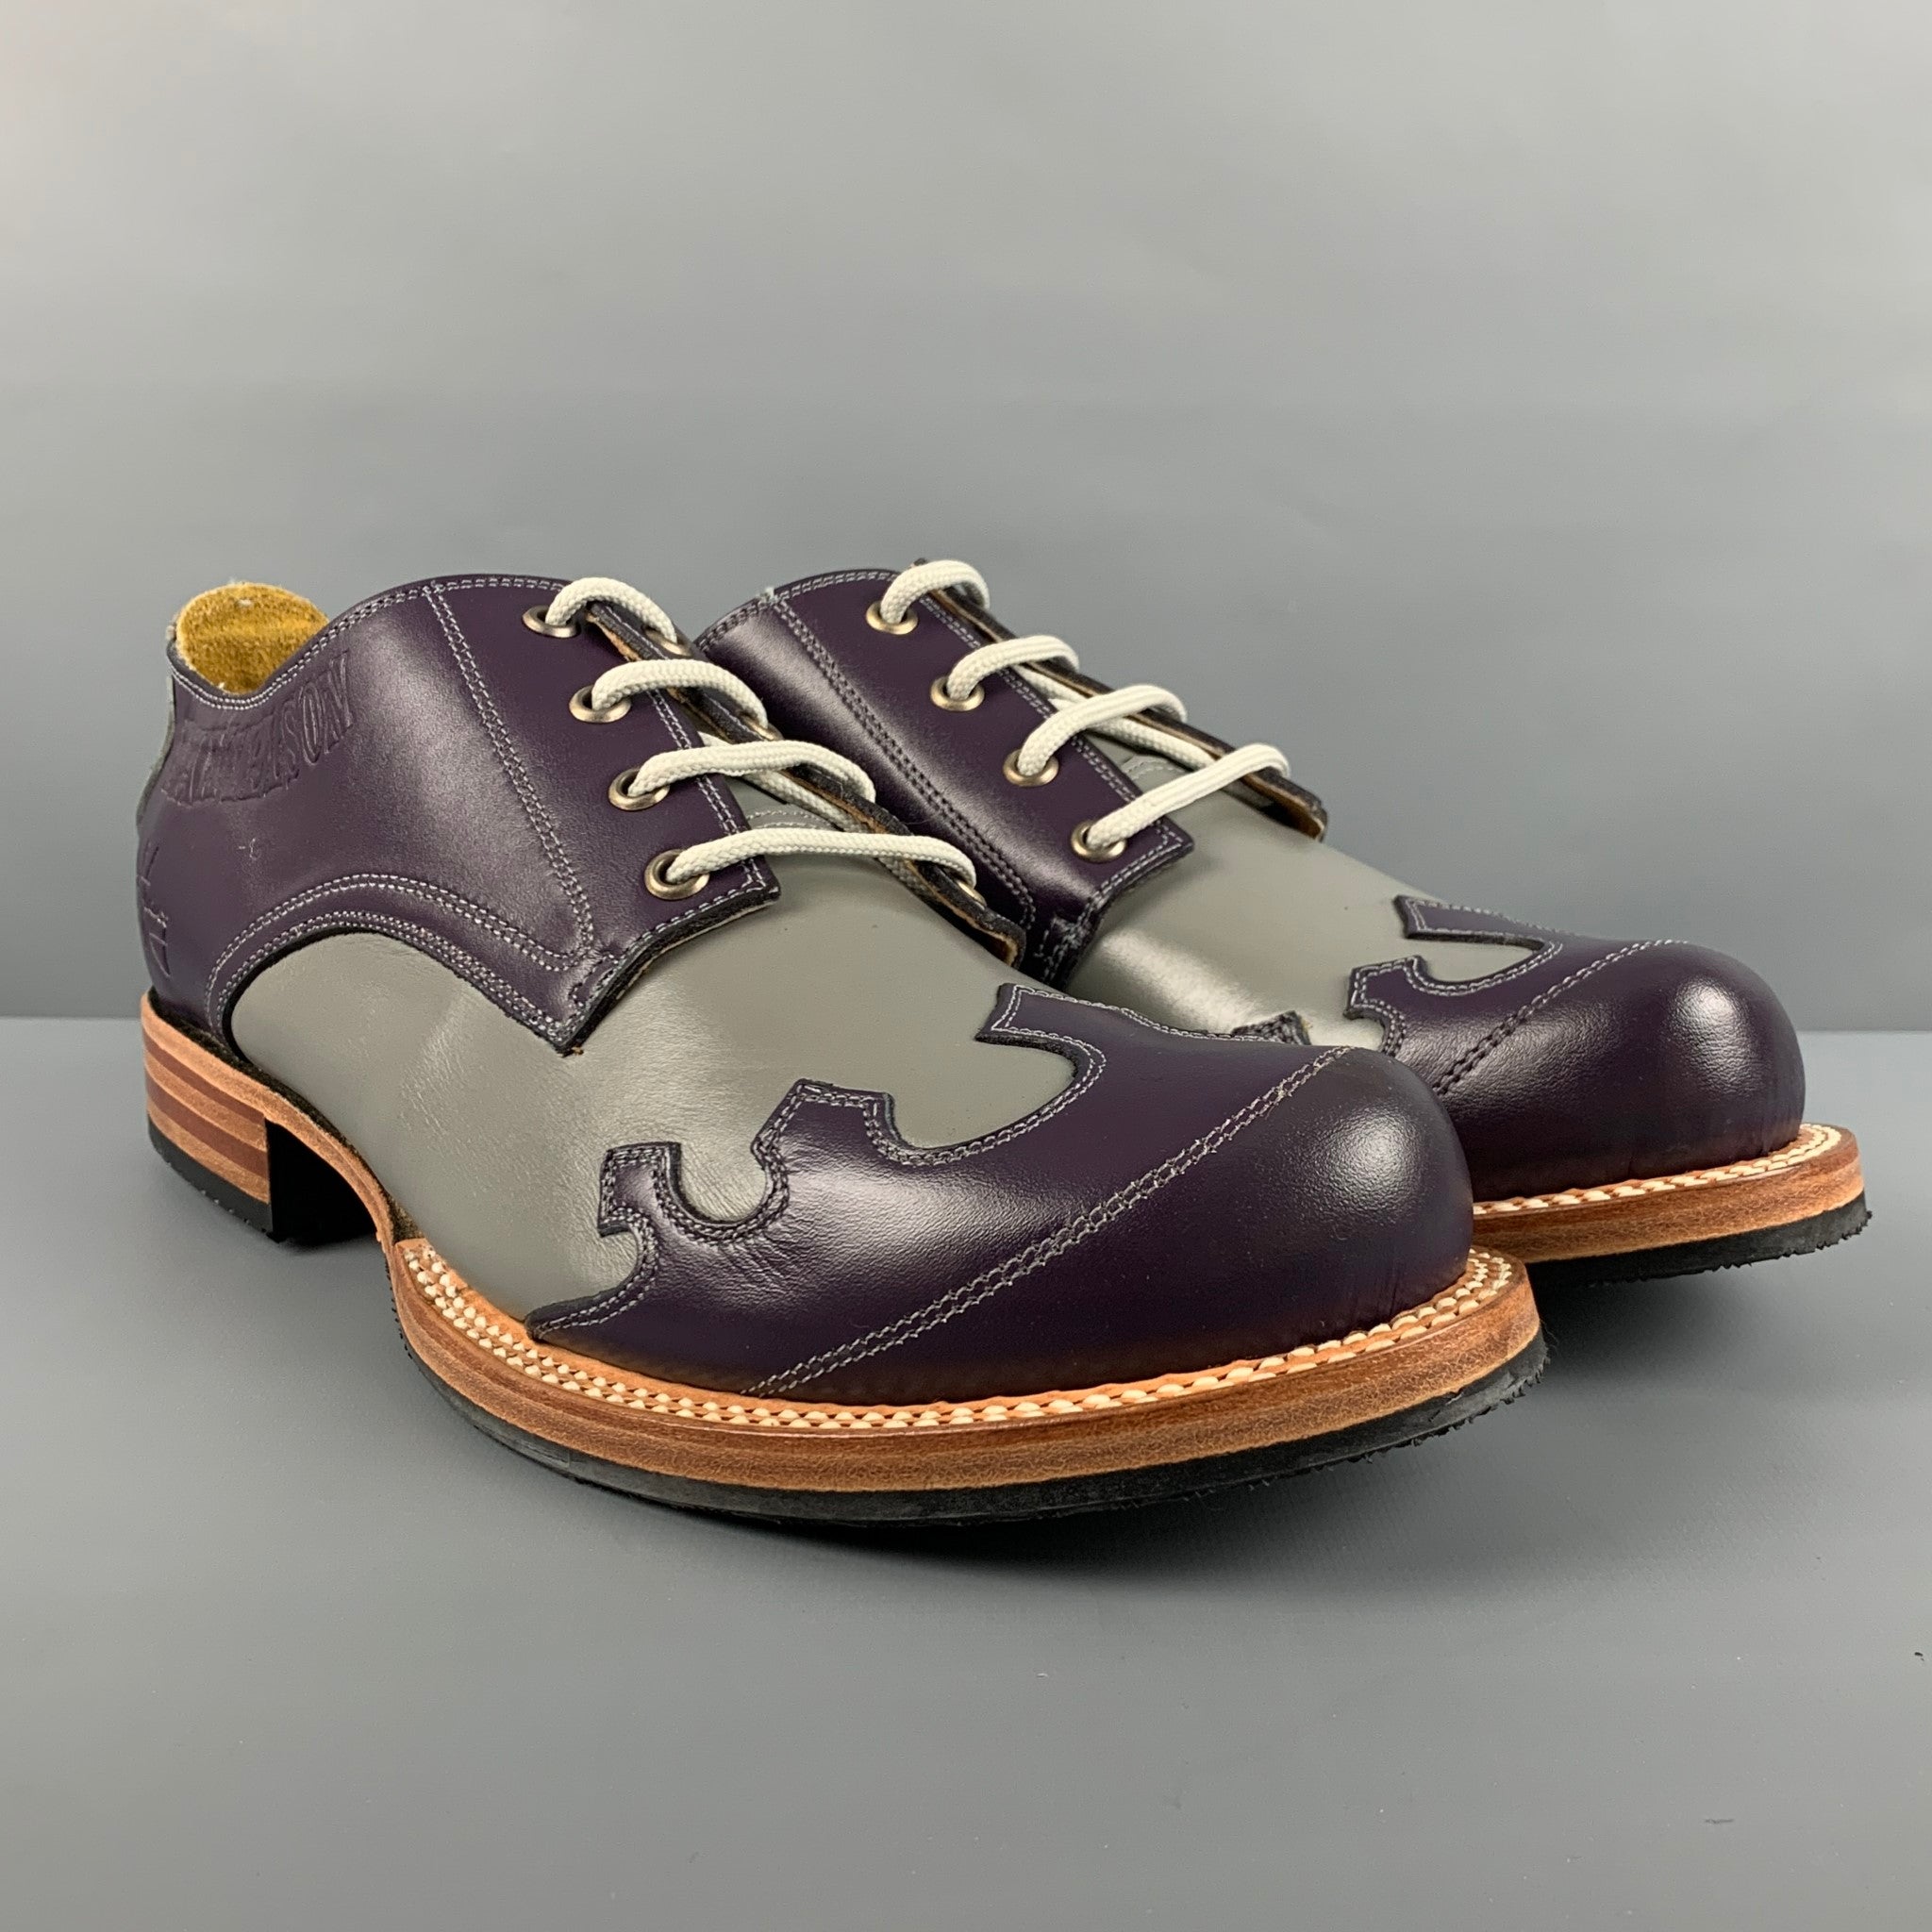 ERMENEGILDO ZEGNA Size 8.5 Black Leather Lace Up Shoes – Sui Generis  Designer Consignment